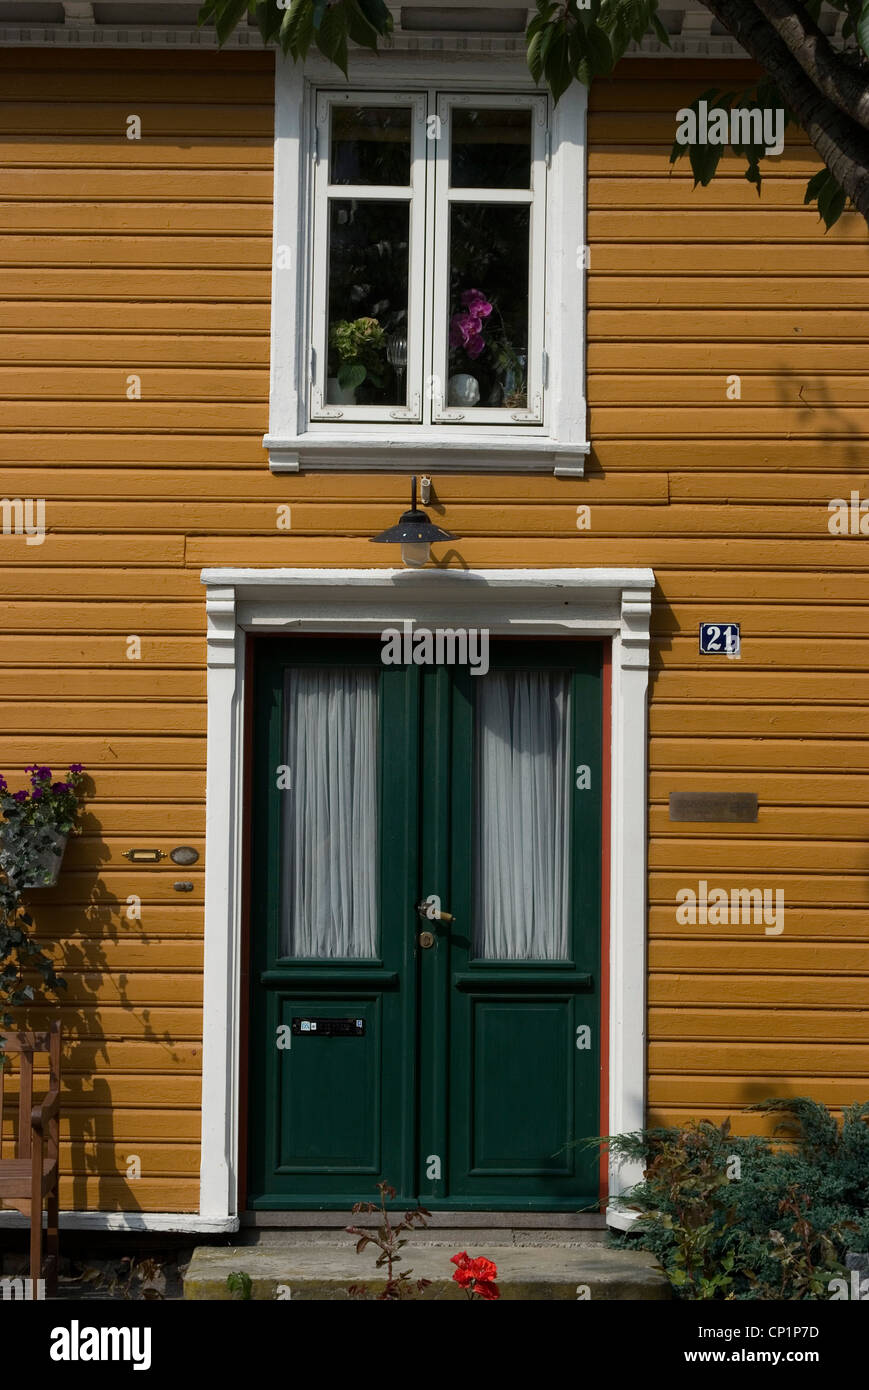 Finestra e porta della vecchia casa in legno nel quartiere storico, Kristiansand, Norvegia Foto Stock